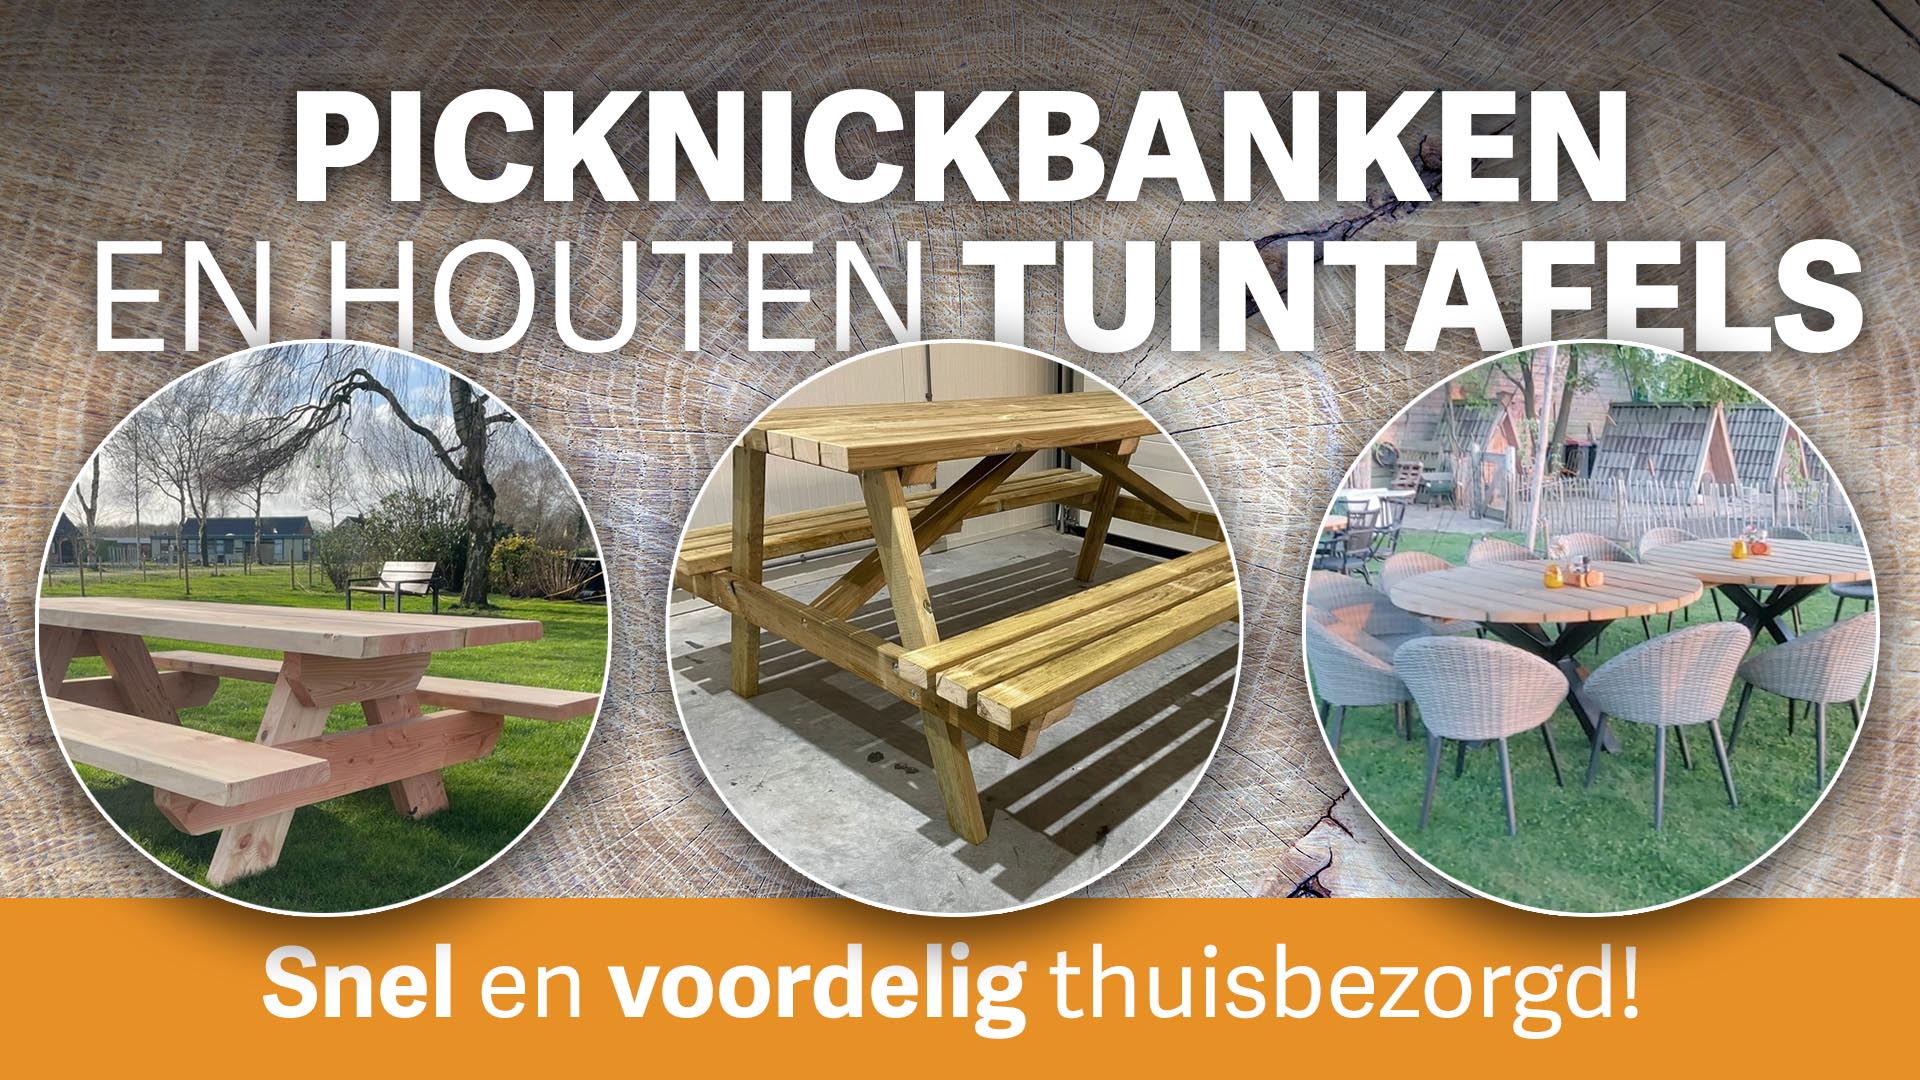 Picknickbanken picknicktafel stalen frame 8persoons 10personen houten tuintafel boomstambladen maatwerk Drenthe friesland groningen overijssel